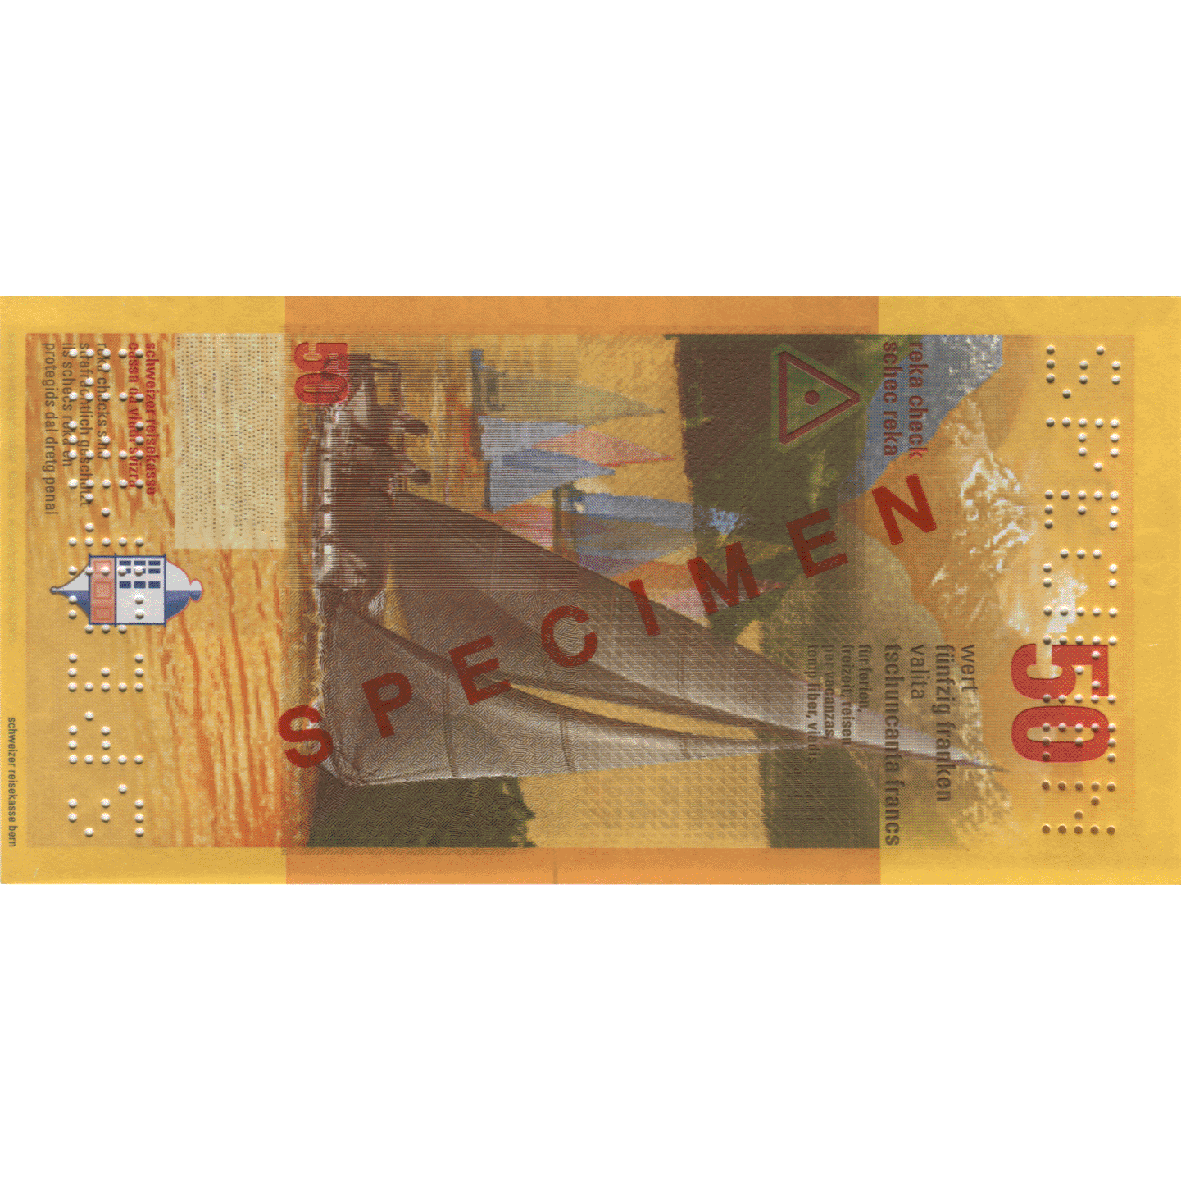 Swiss Confederation, Reka-Ceck 50 Francs (obverse)